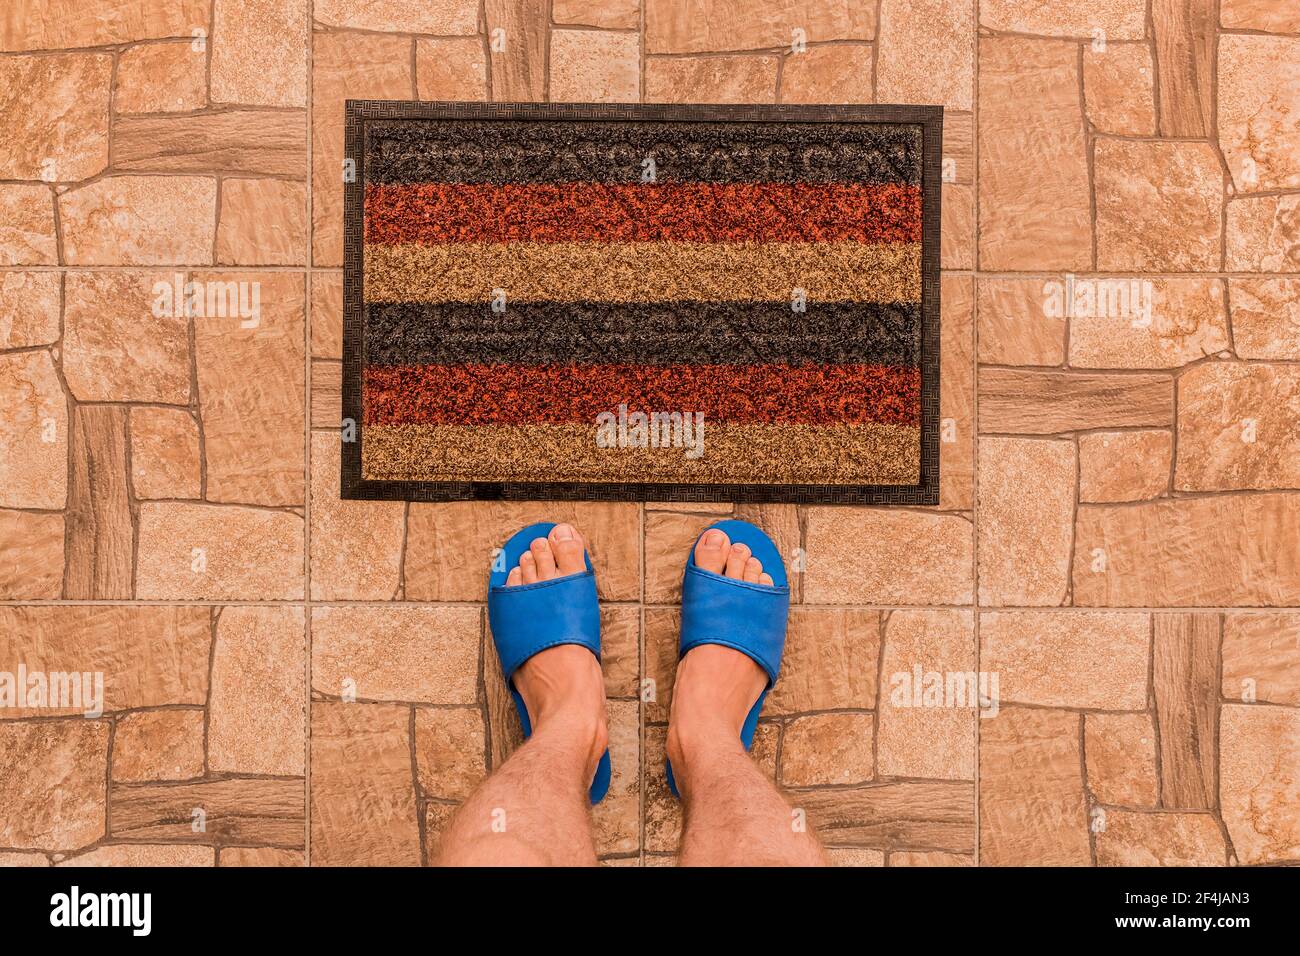 Les pieds mâles dans des pantoufles bleues se tiennent devant un tapis de pied sur un fond de sol carrelé marron texturé, vue du dessus. Banque D'Images